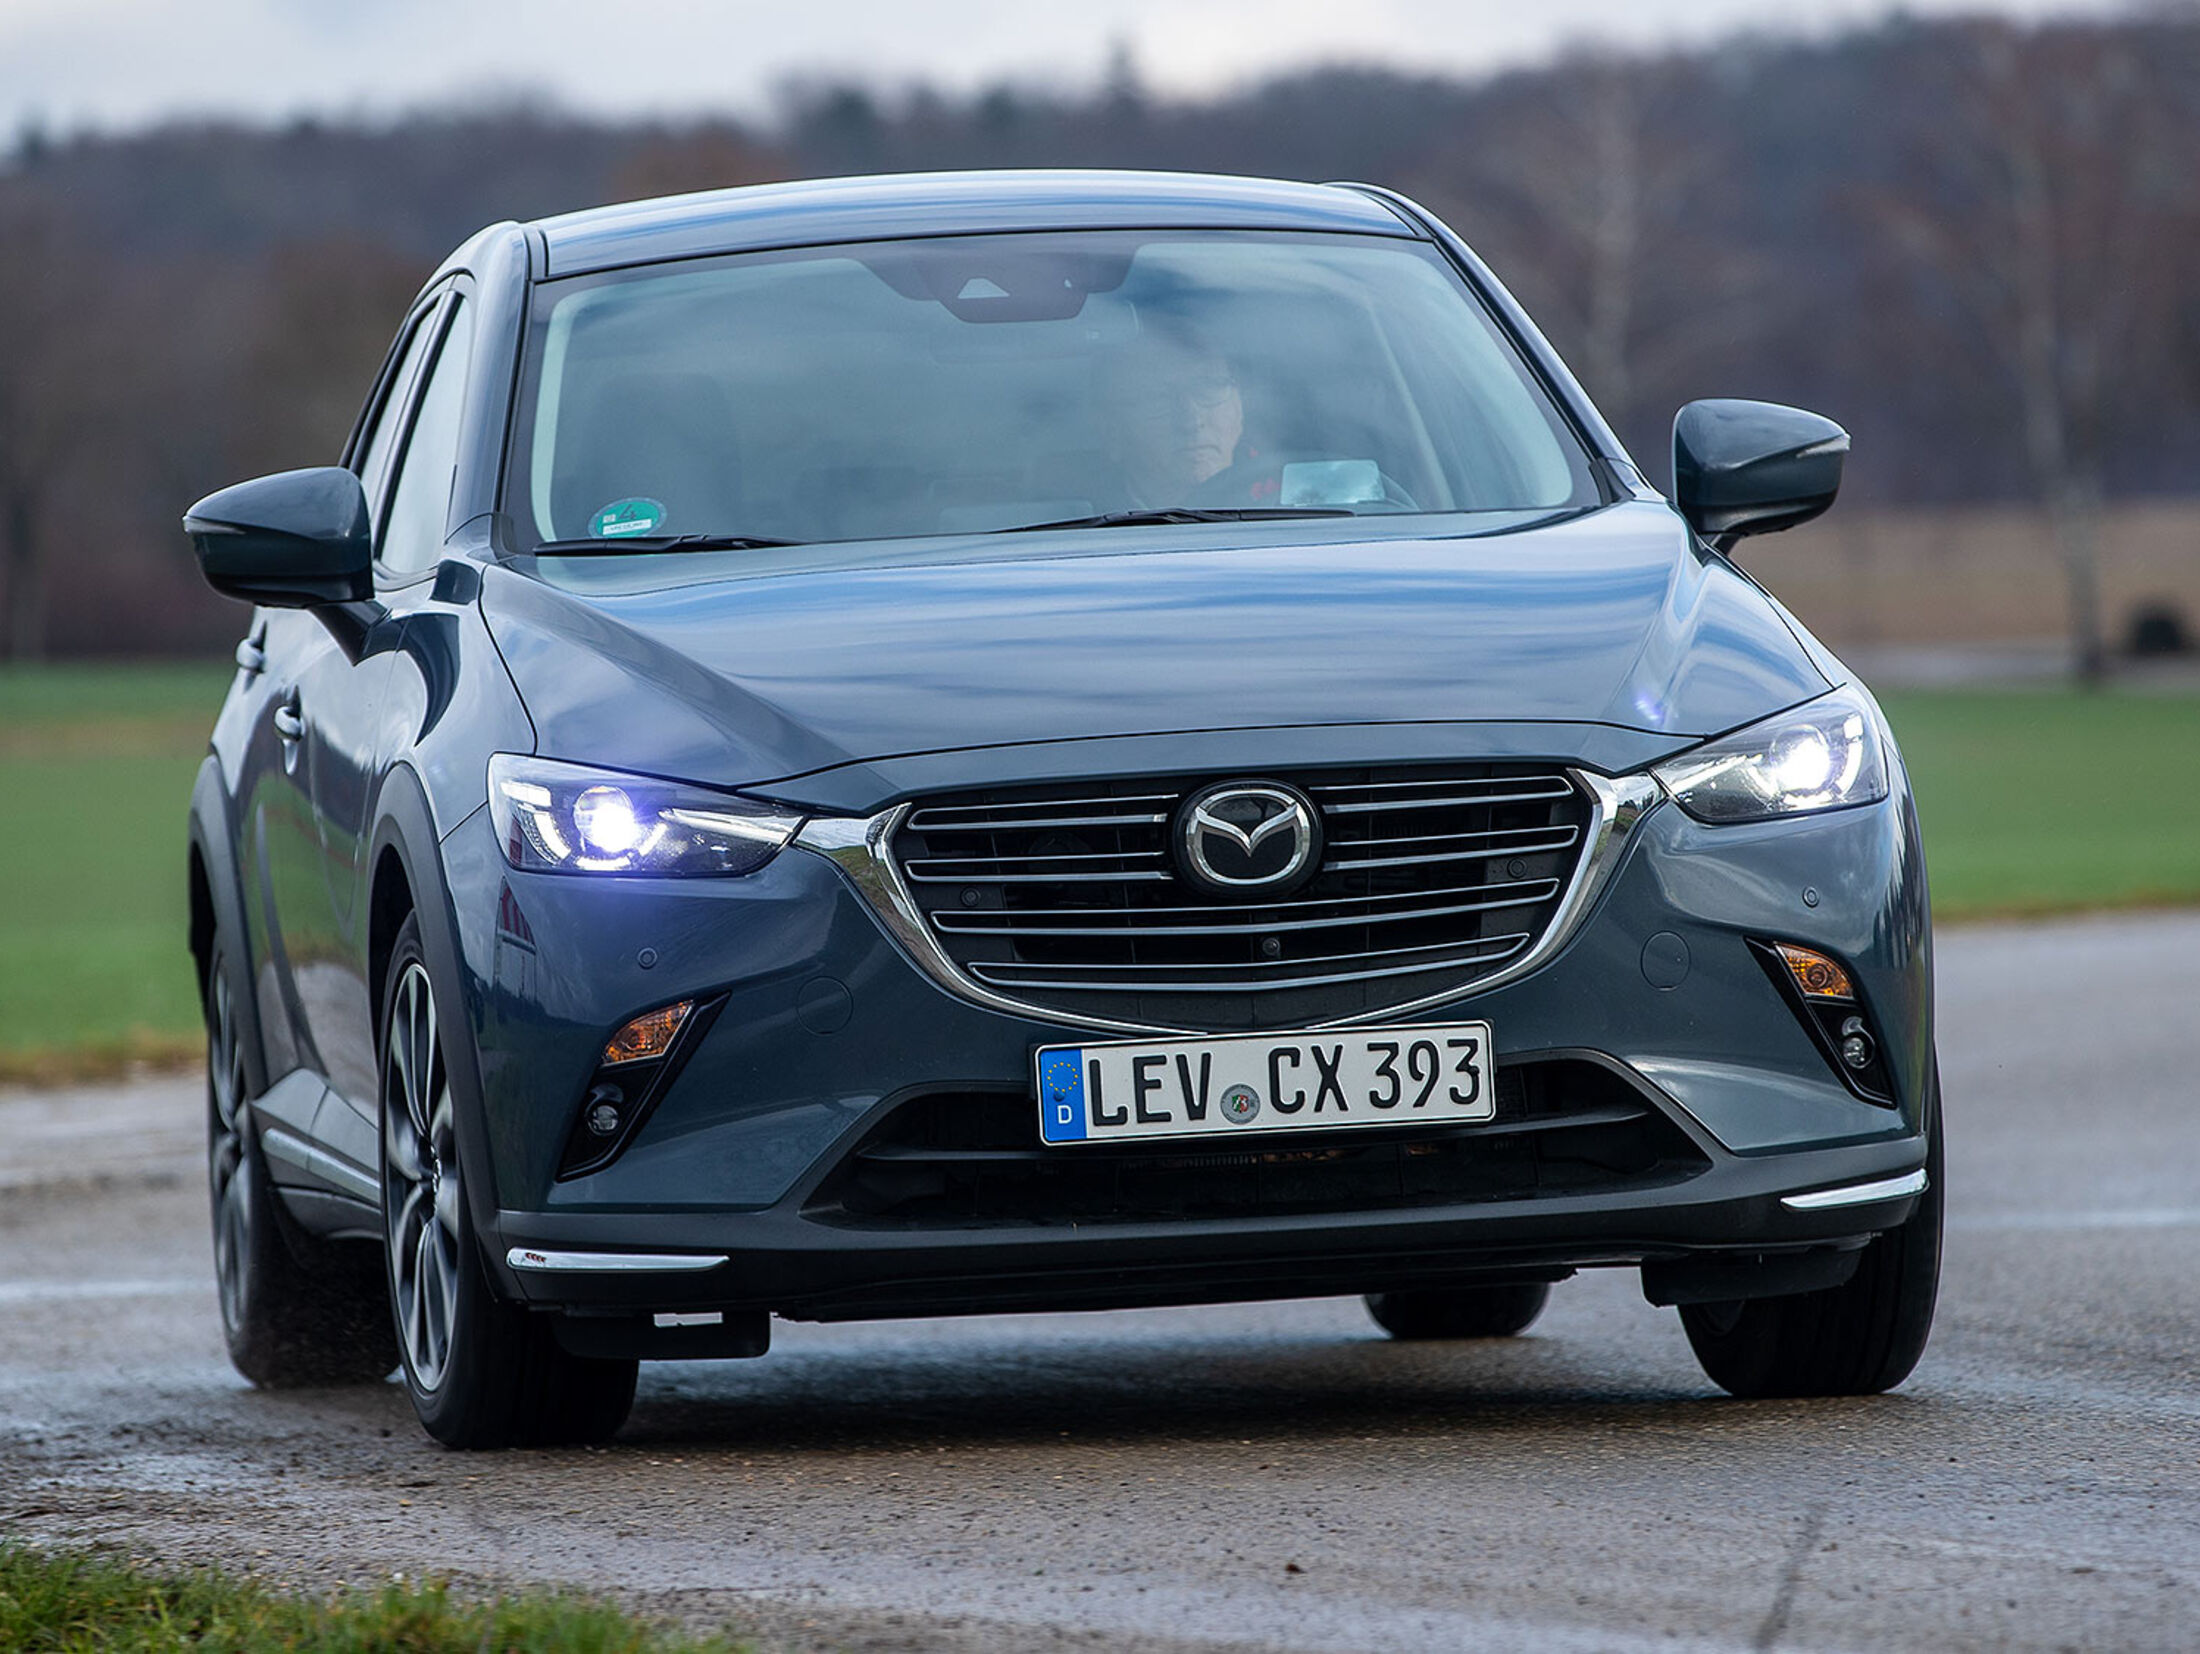 Mazda6: Technische Daten, Preise, Bilder und Video (2013) @